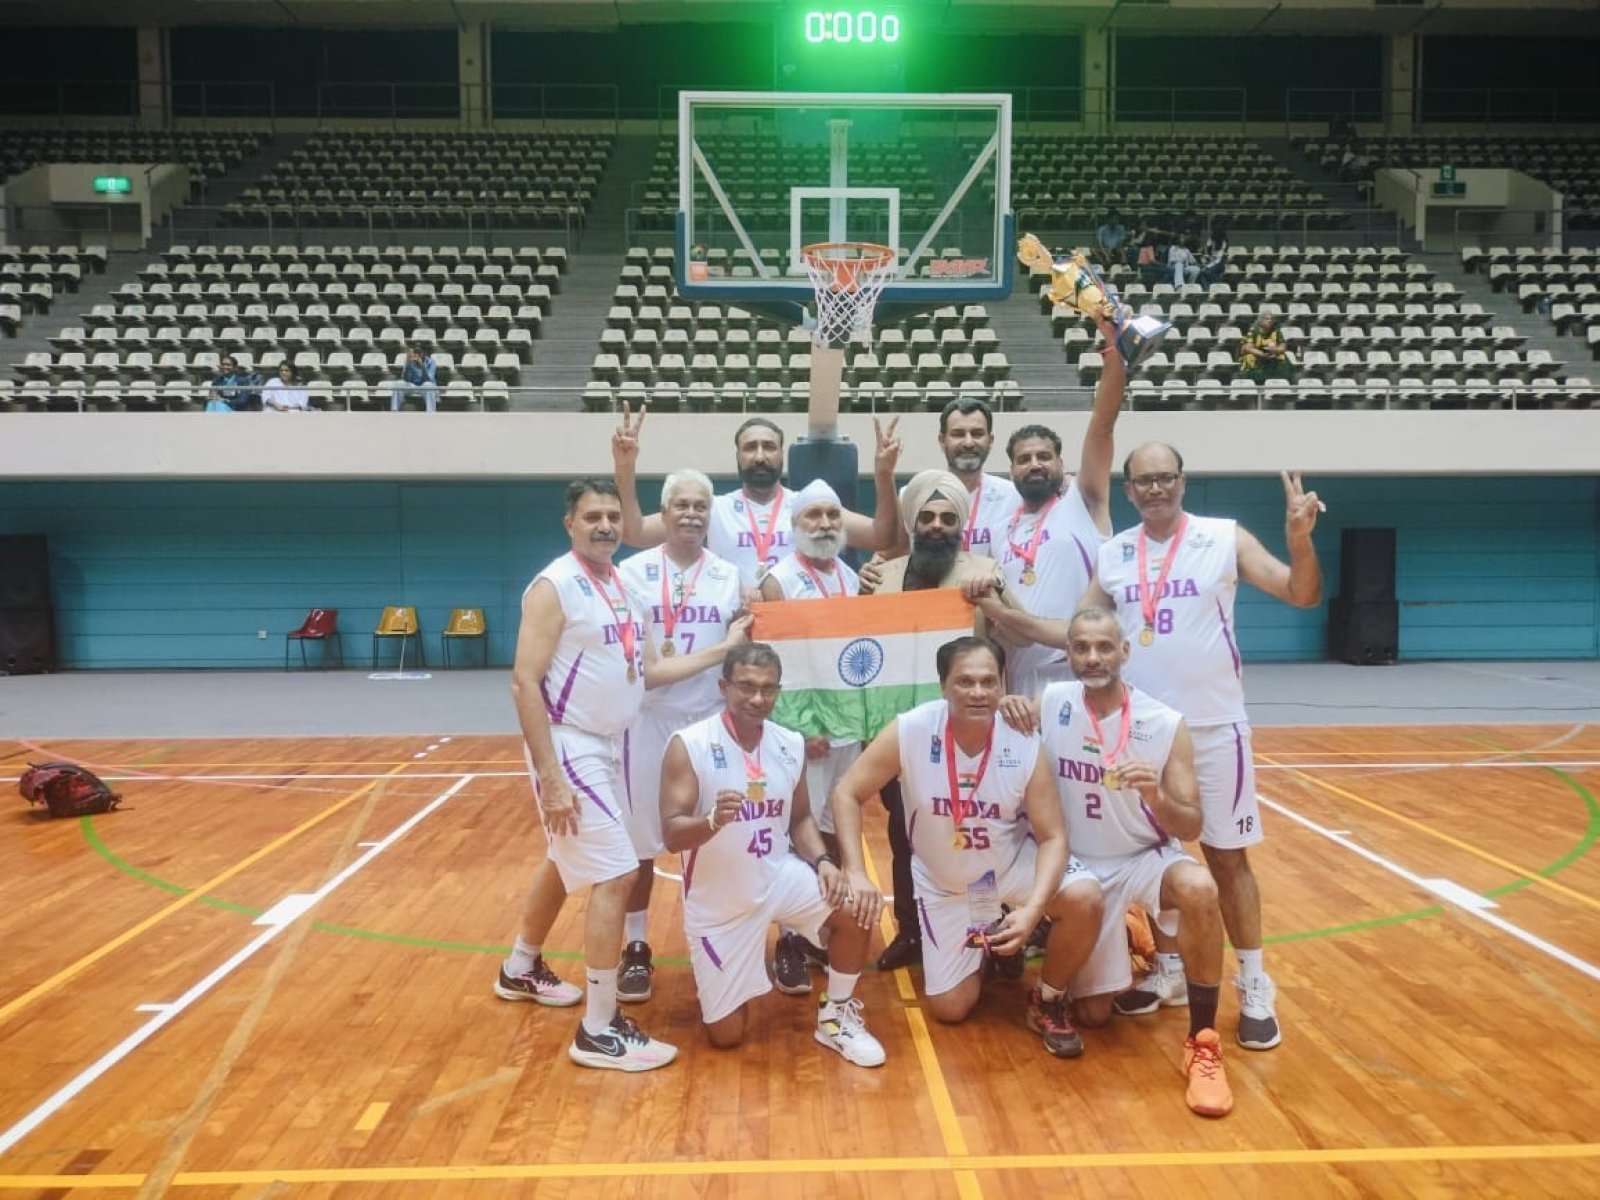 टीम इंडिया (खेलो मास्टर्स) पुरुषों की 50+ की टीम ने कोलंबो, श्रीलंका में 'श्रीलंका मास्टर्स बास्केटबॉल टूर्नामेंट' का खिताब जीता